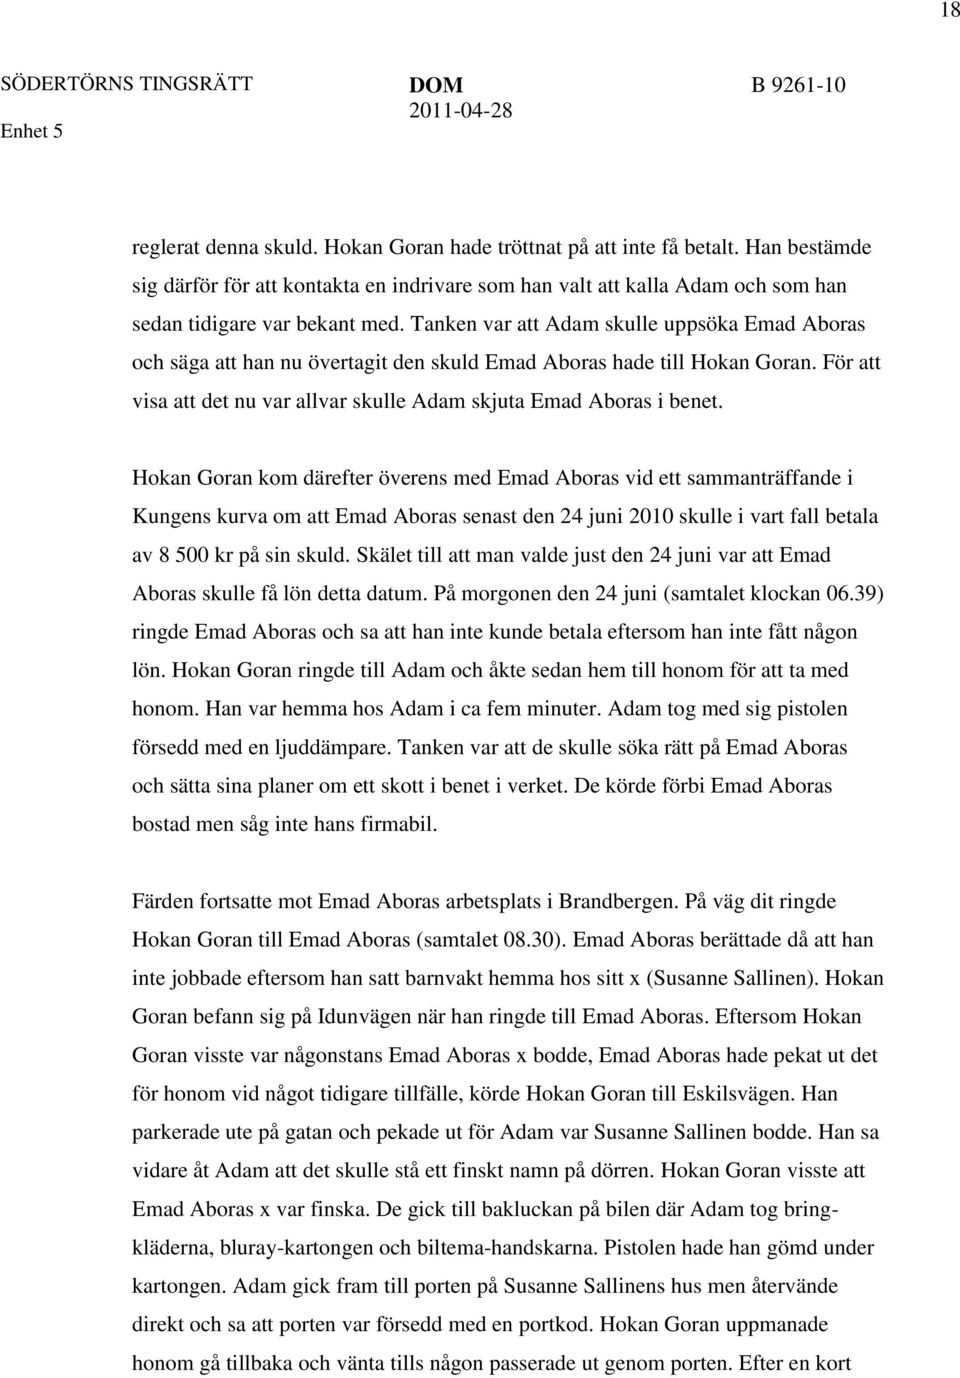 Hokan Goran kom därefter överens med Emad Aboras vid ett sammanträffande i Kungens kurva om att Emad Aboras senast den 24 juni 2010 skulle i vart fall betala av 8 500 kr på sin skuld.